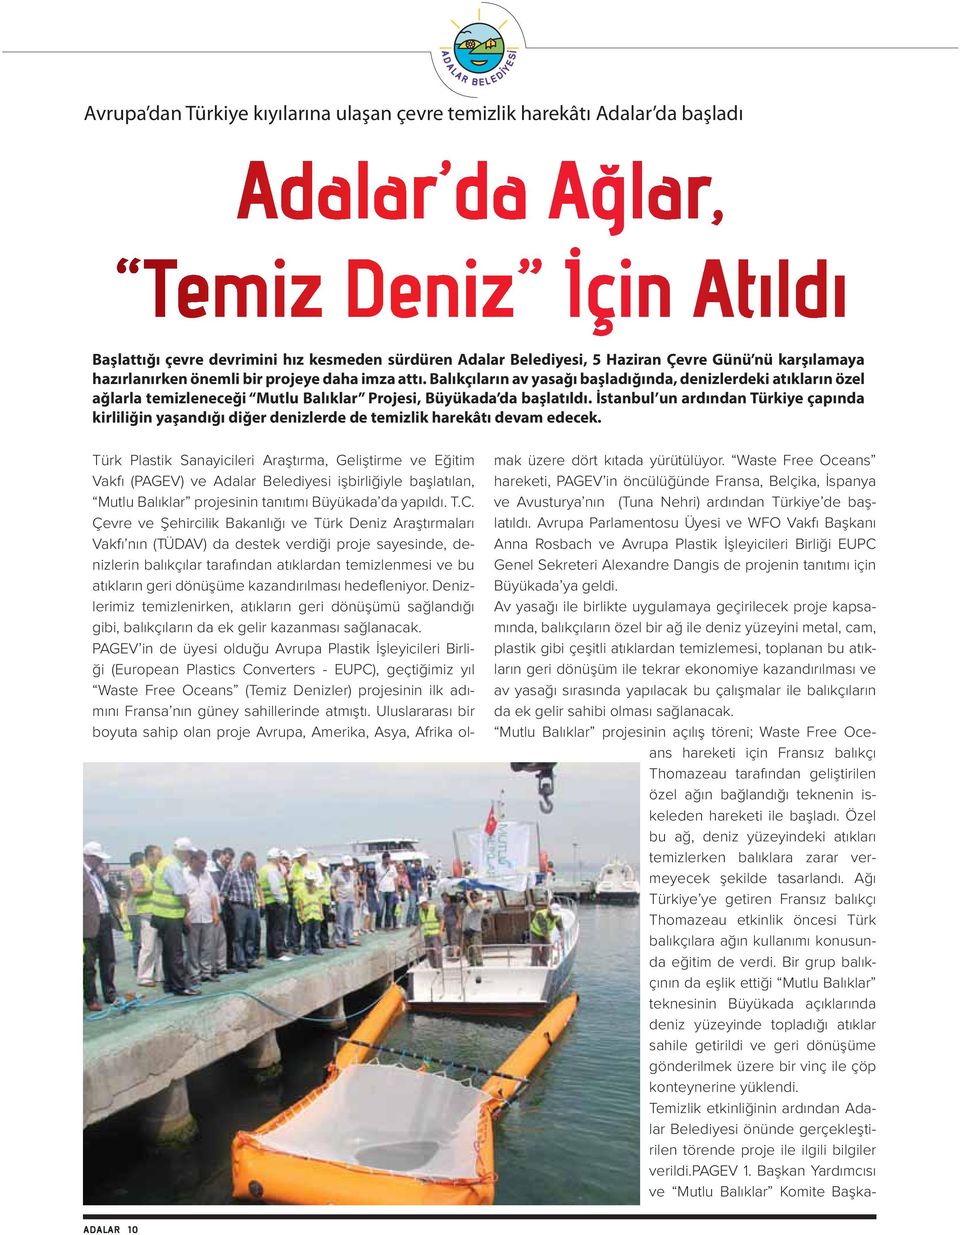 İstanbul un ardından Türkiye çapında kirliliğin yaşandığı diğer denizlerde de temizlik harekâtı devam edecek.